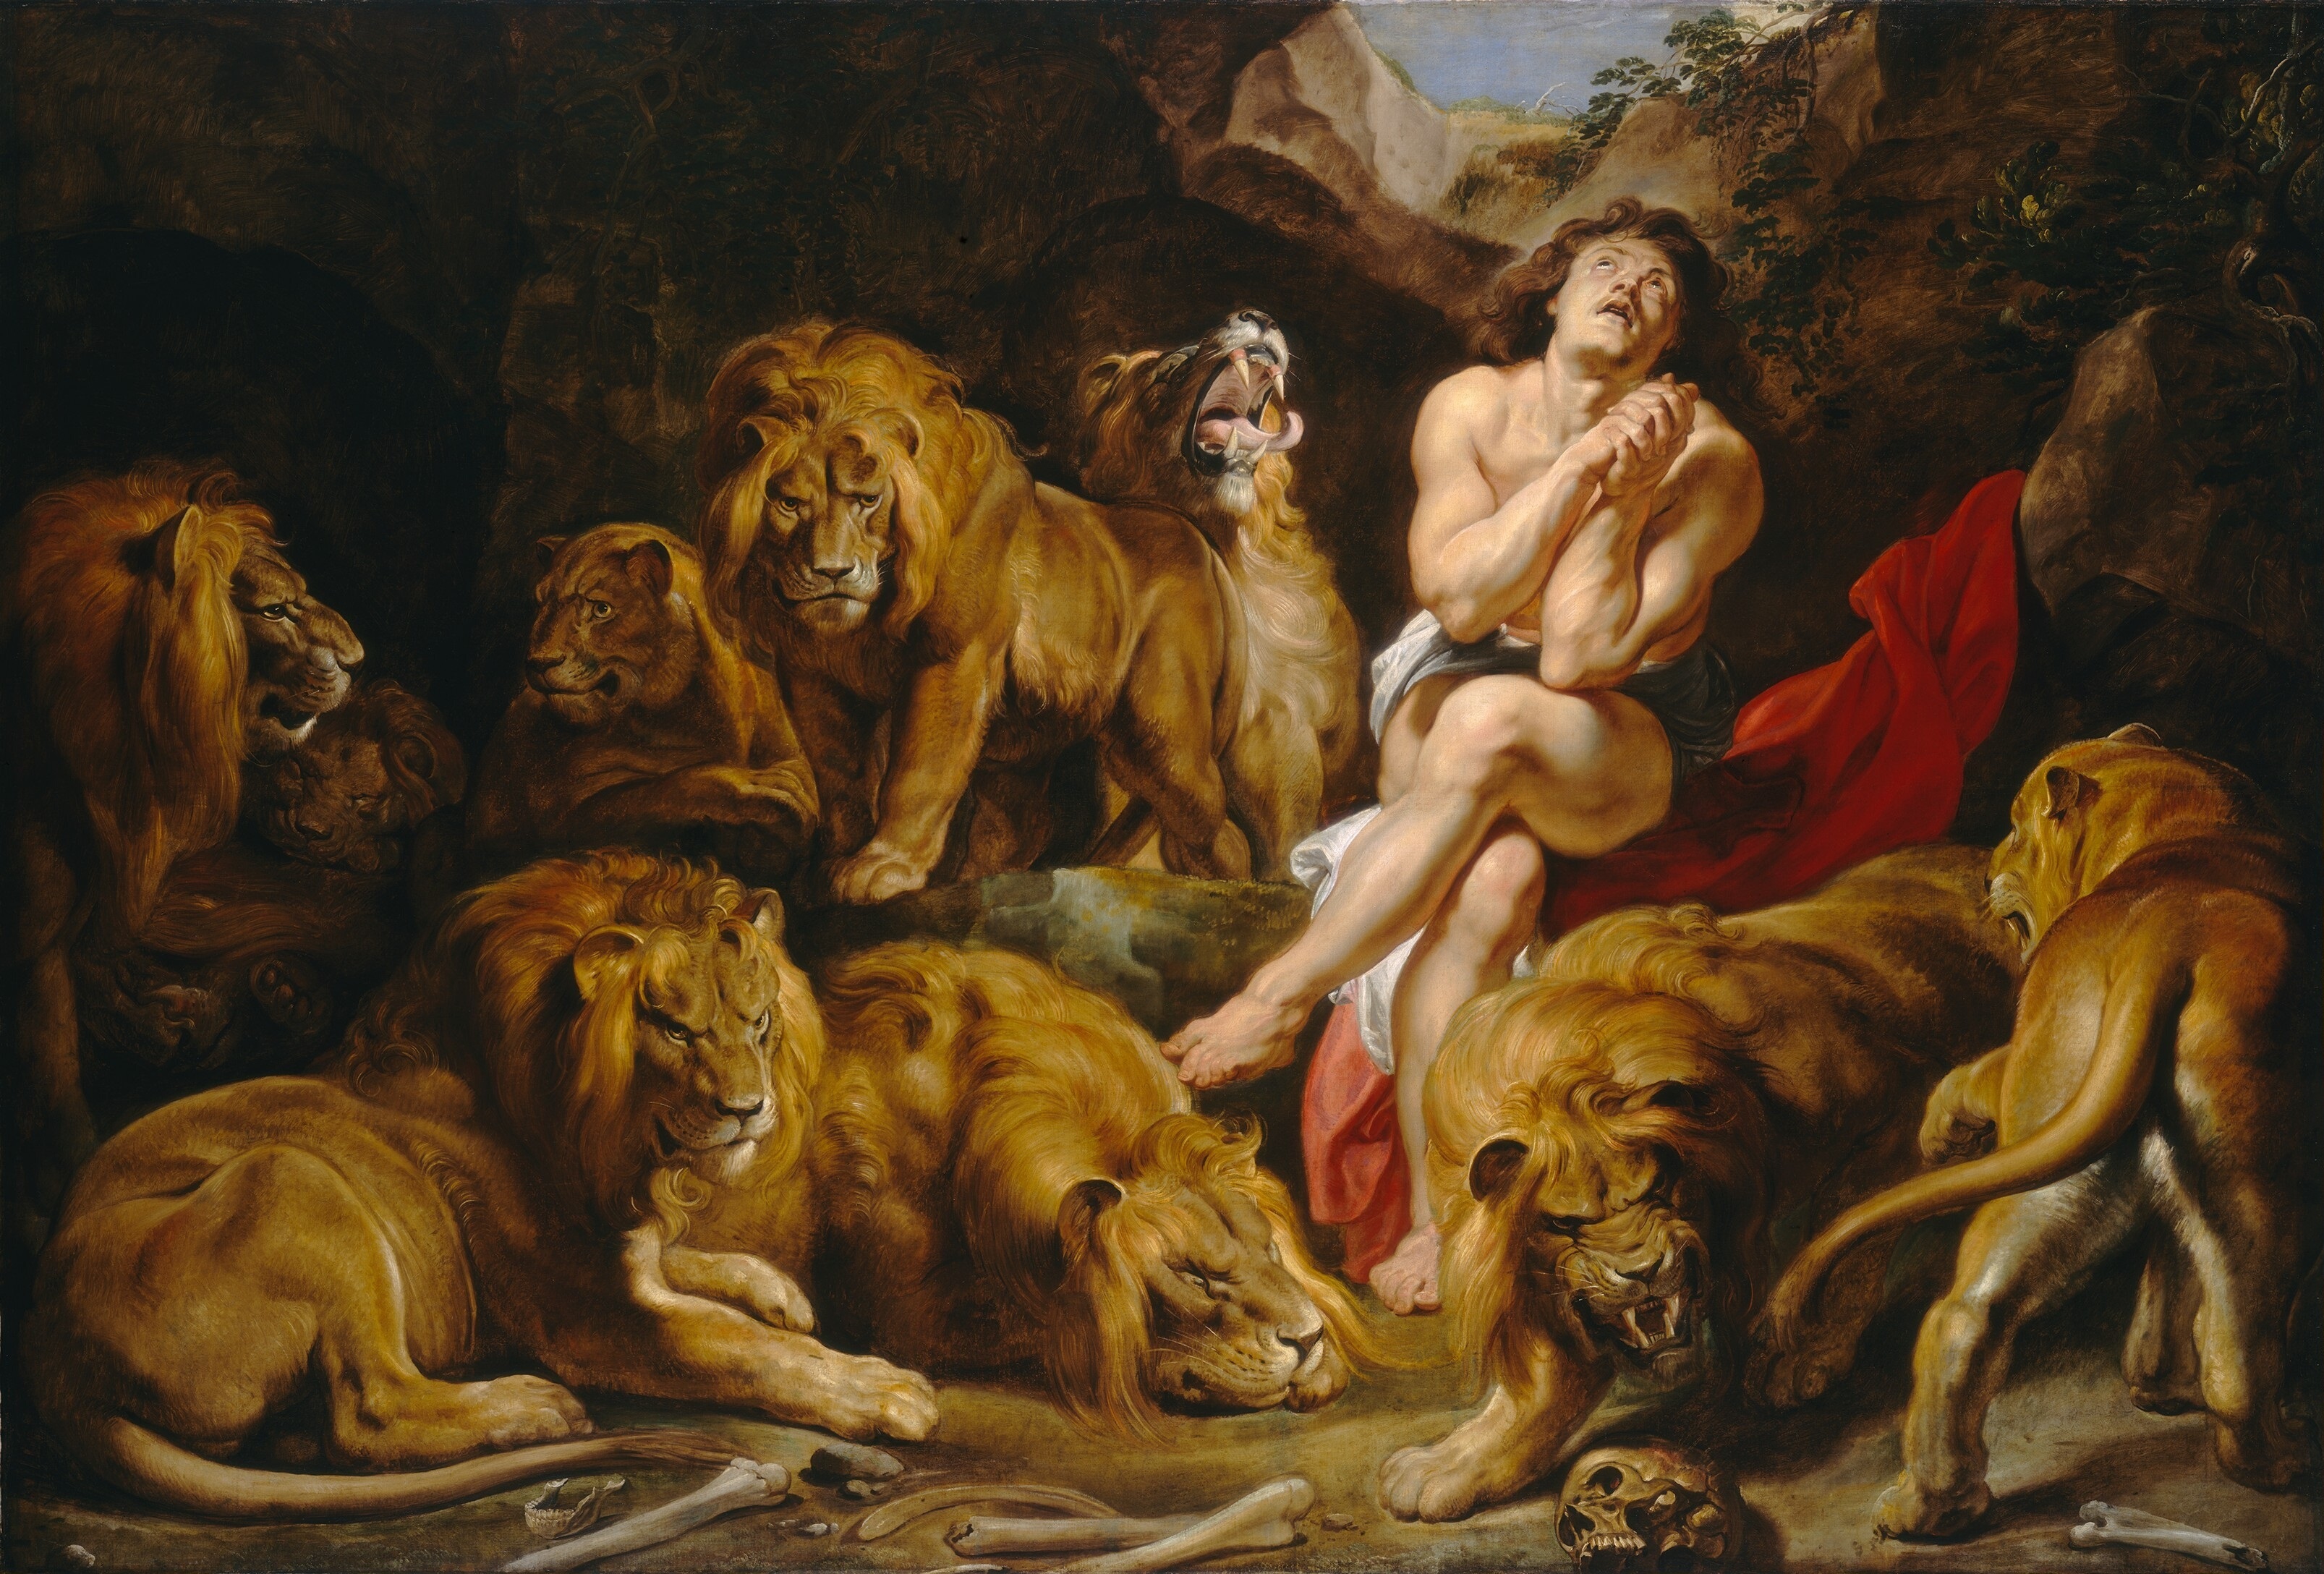 Daniel w Jaskini Lwów by Peter Paul Rubens - ok. 1614/1616 - 224.2 x 330.5 cm 